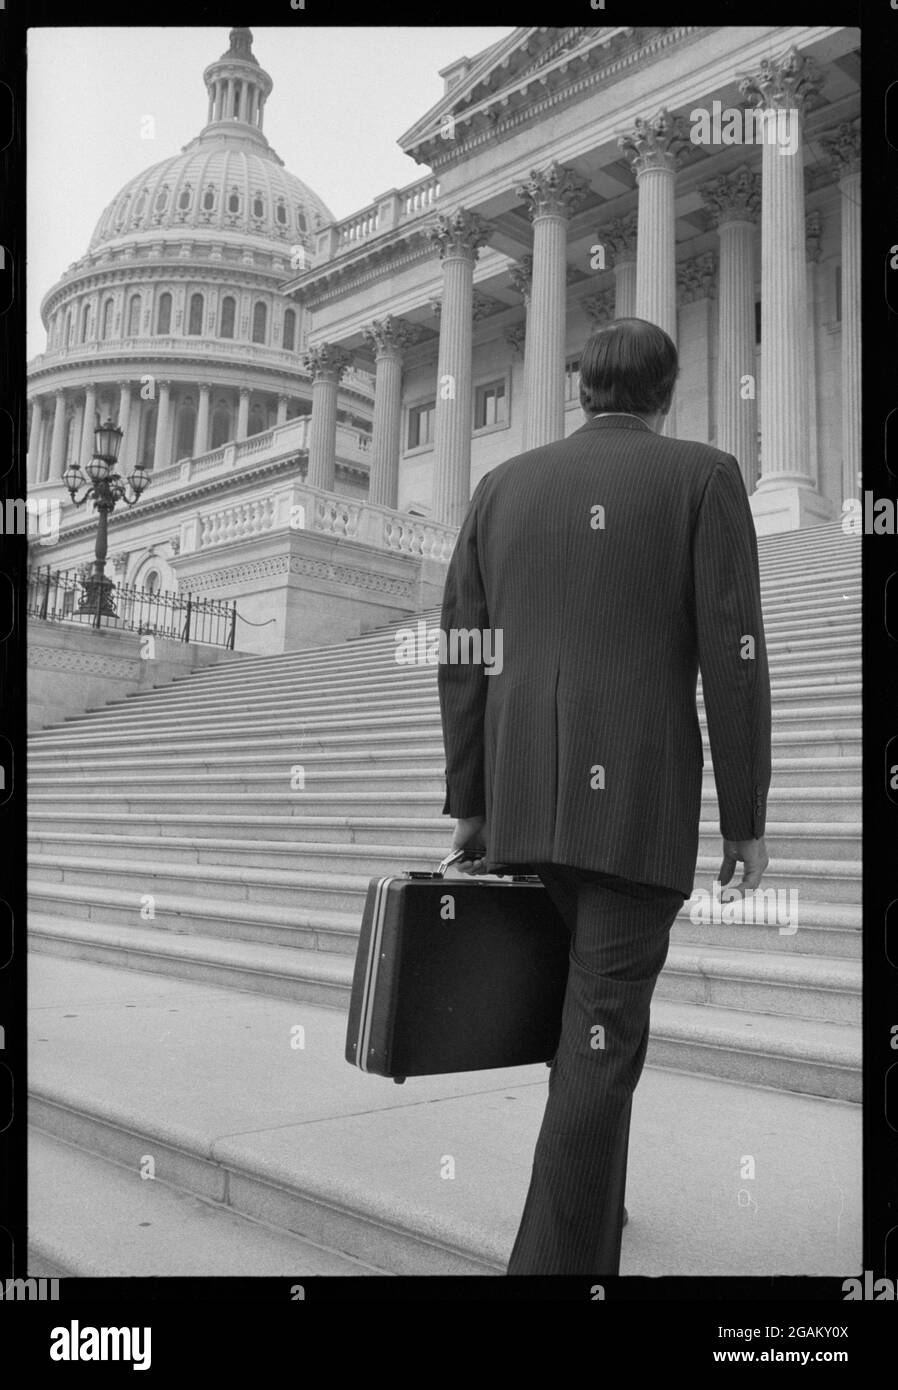 Rückansicht eines Mannes, der einen Business-Anzug trägt und eine Aktentasche trägt, die die Stufen zum Kapitolgebäude der Vereinigten Staaten führt, mit dem Capitol Dome links, Washington, DC, 7/9/1977. (Foto von Warren K Leffler/US News & World Report Collection/RBM Vintage Images) Stockfoto